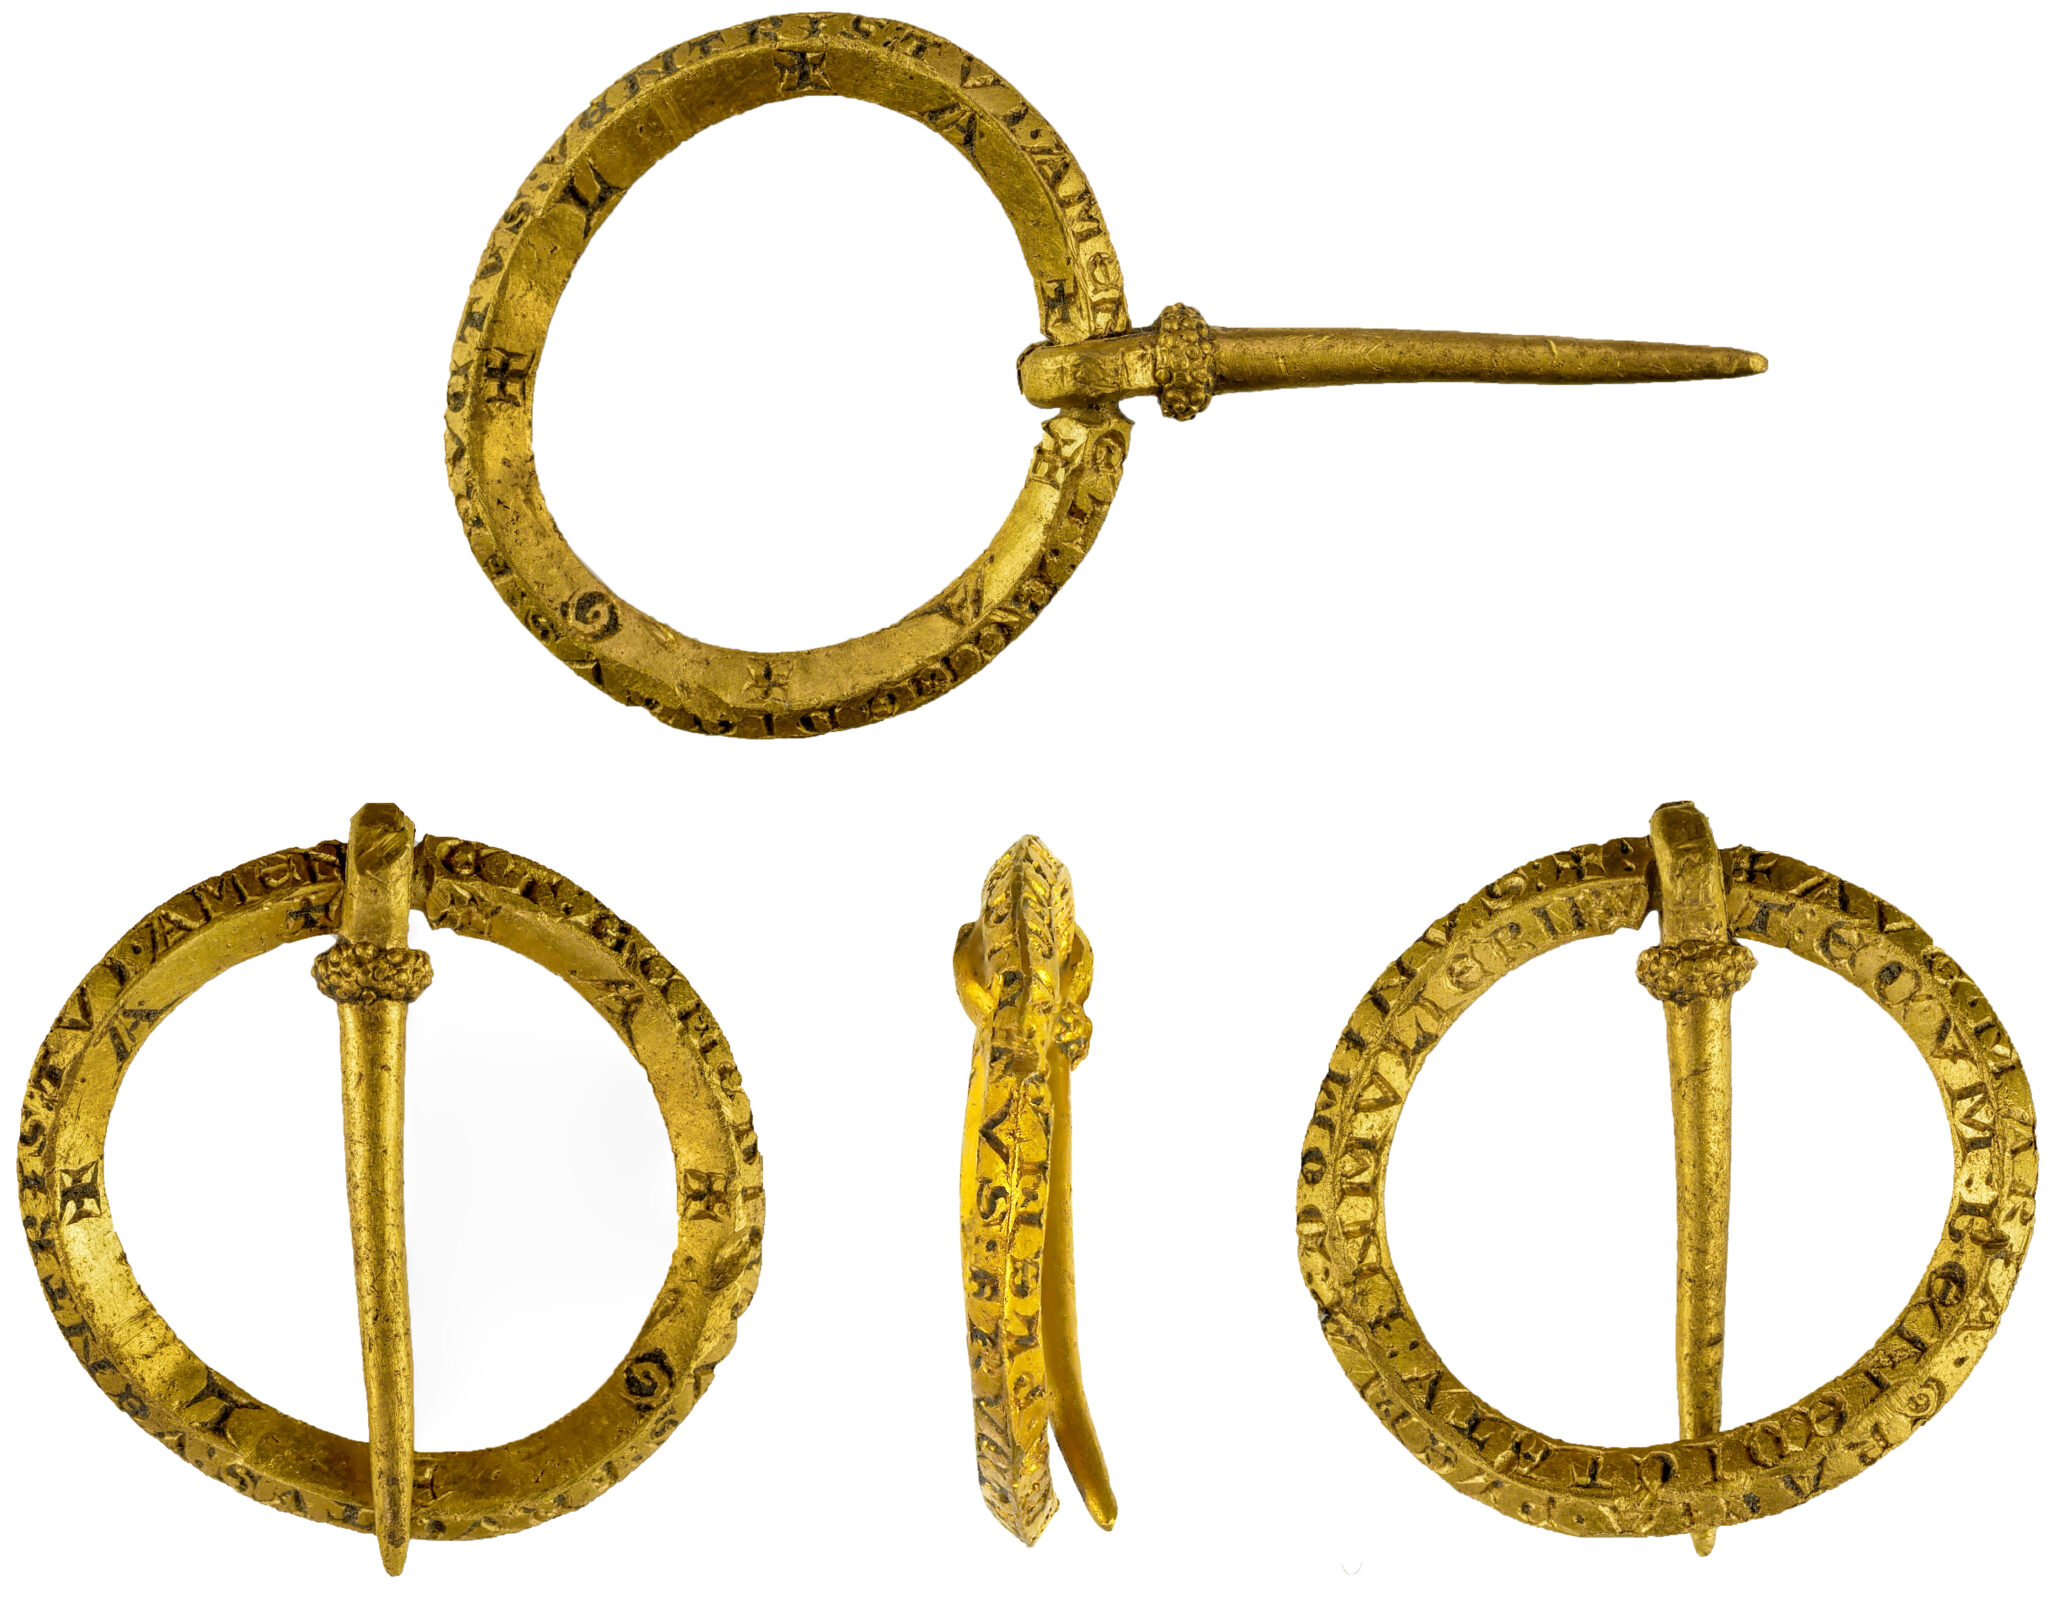 Unique gold brooch prayer amulet found